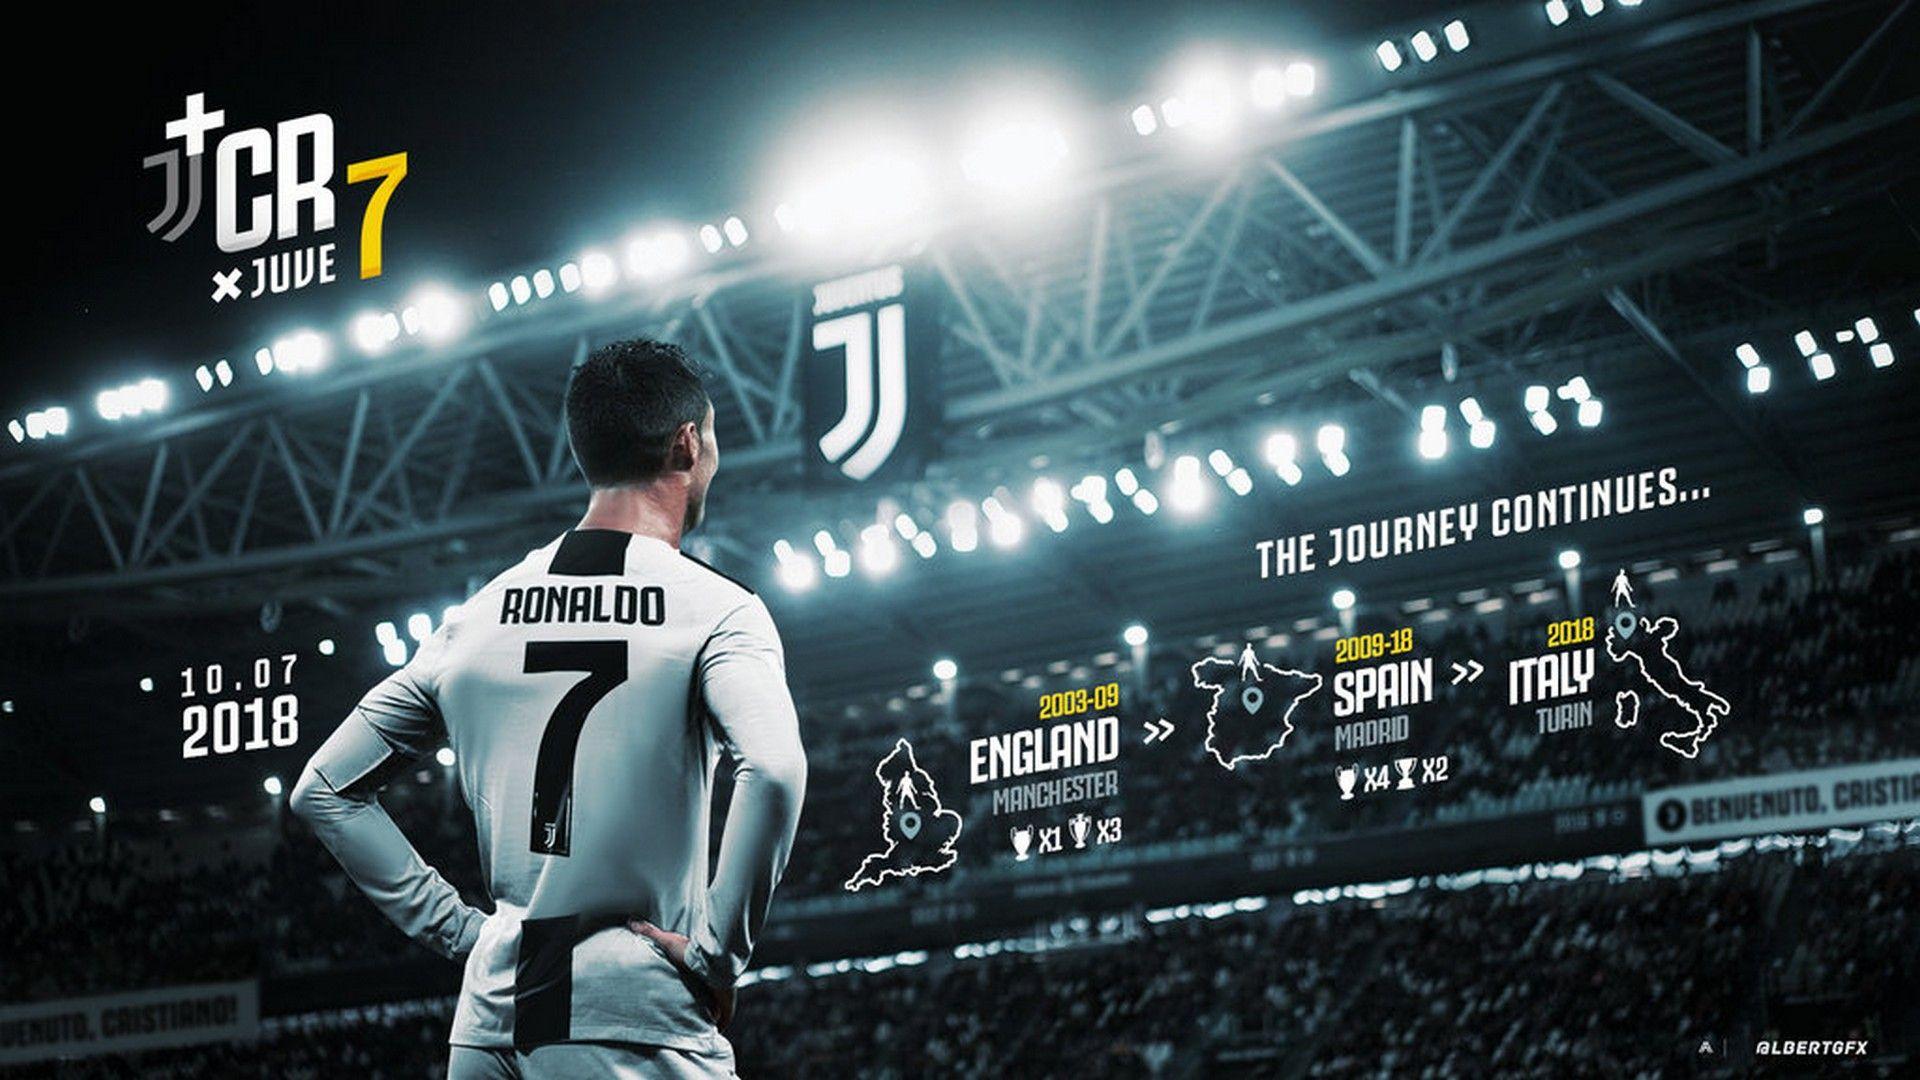 Best C Ronaldo Juventus Wallpaper Cute Wallpaper